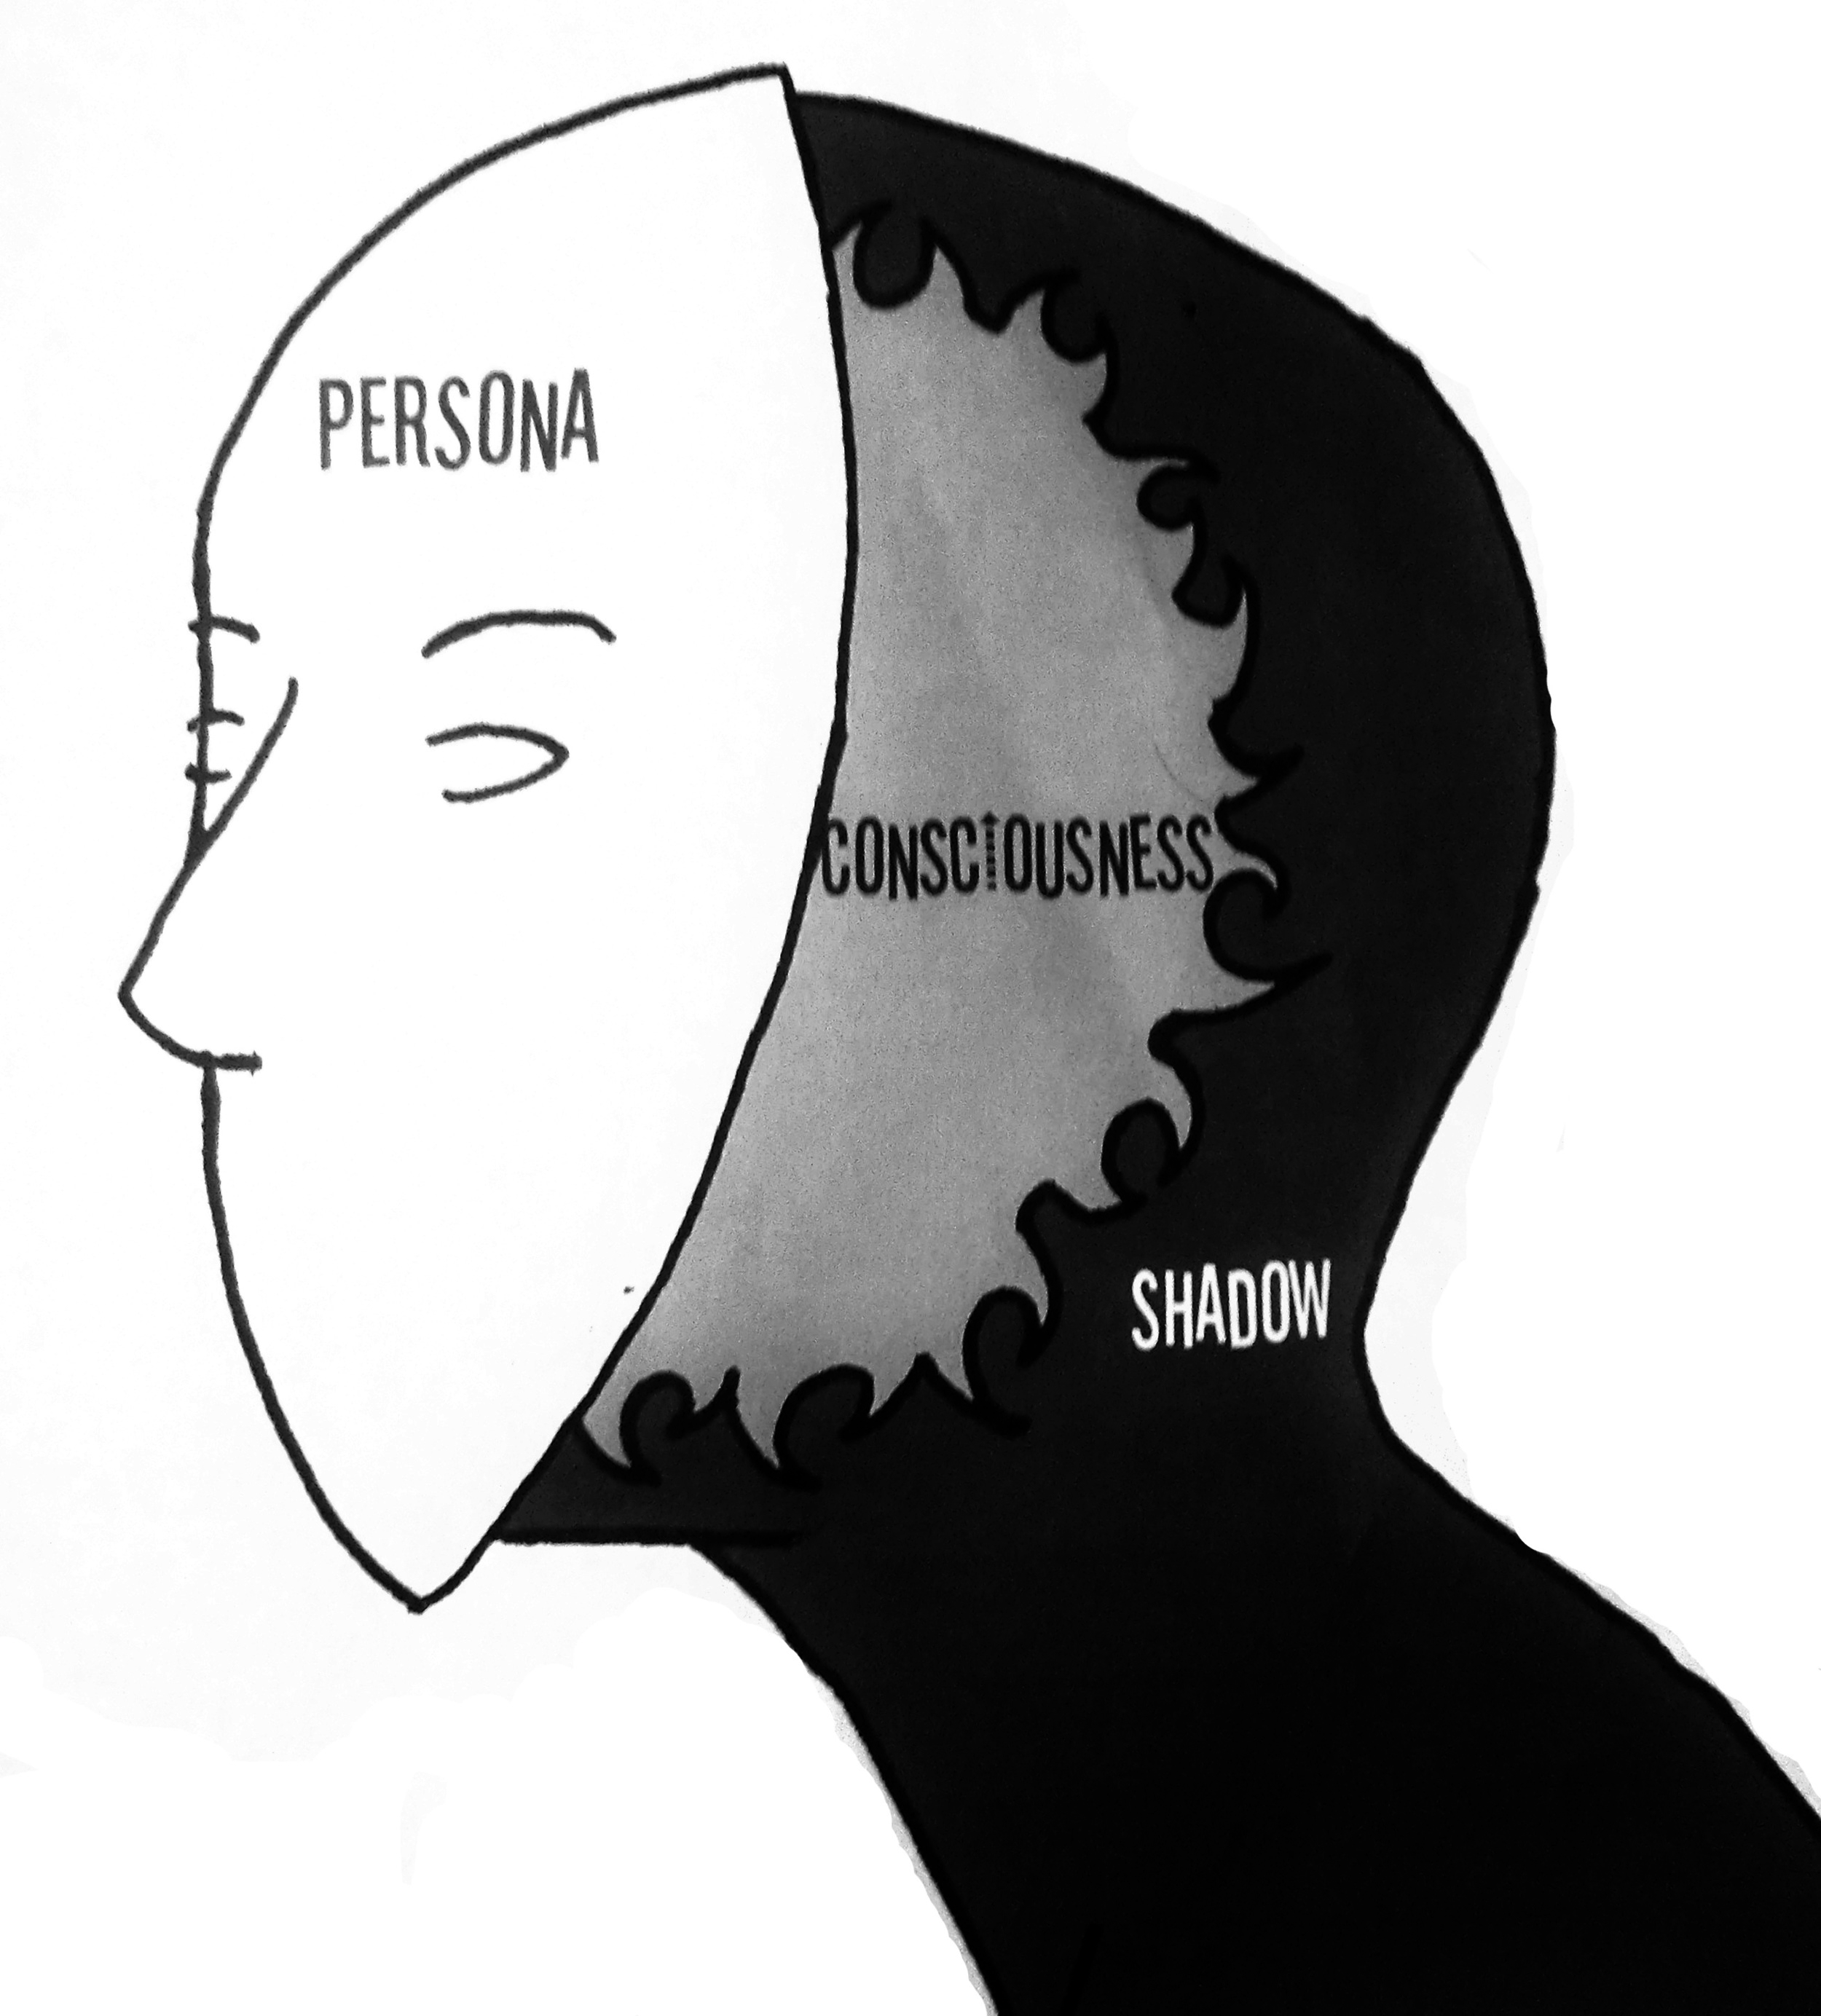 Persona, Consciousness, Shadow